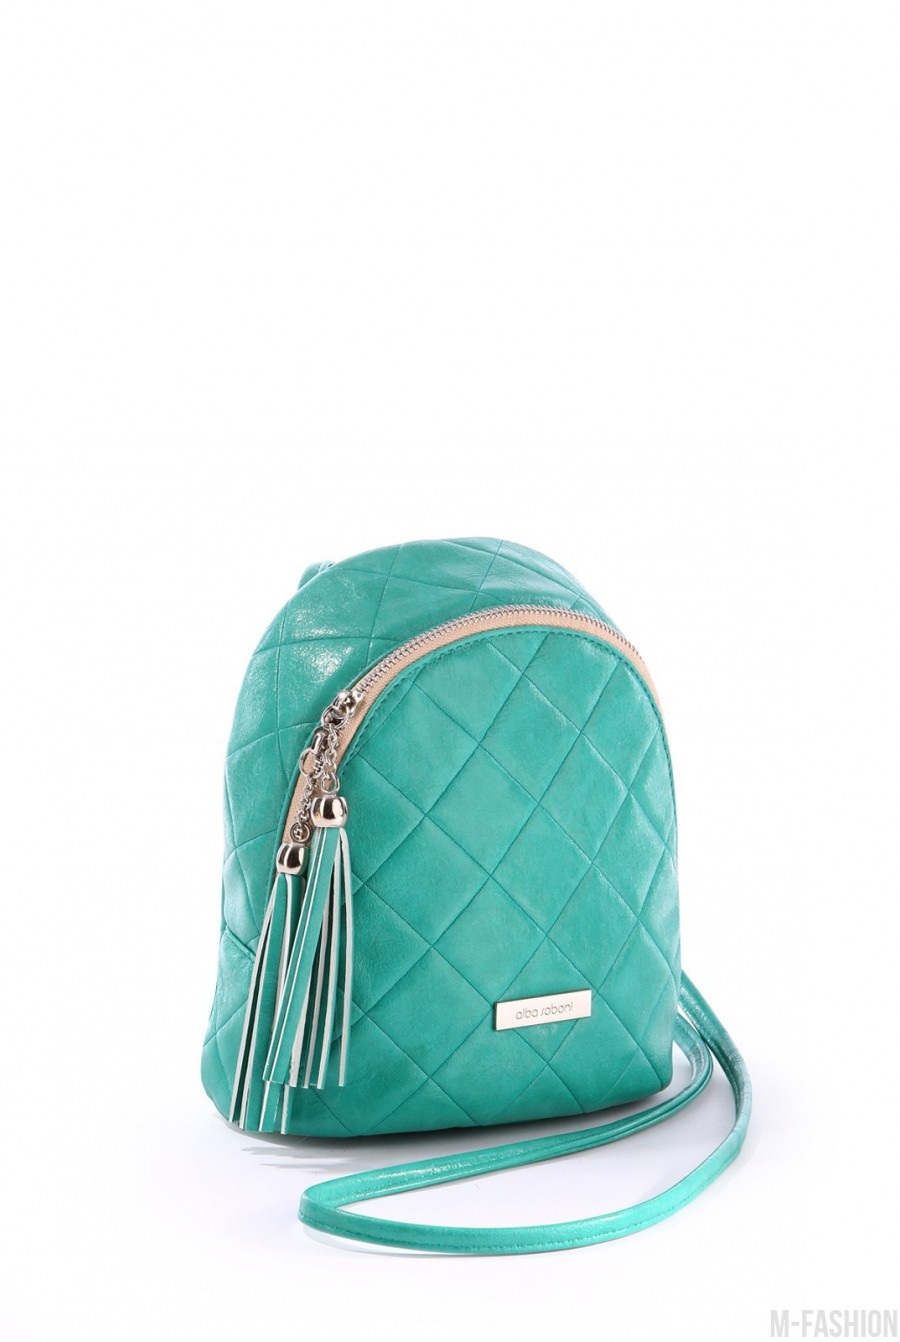 Яркий стильный мини-рюкзак с кисточкой - Фото 1